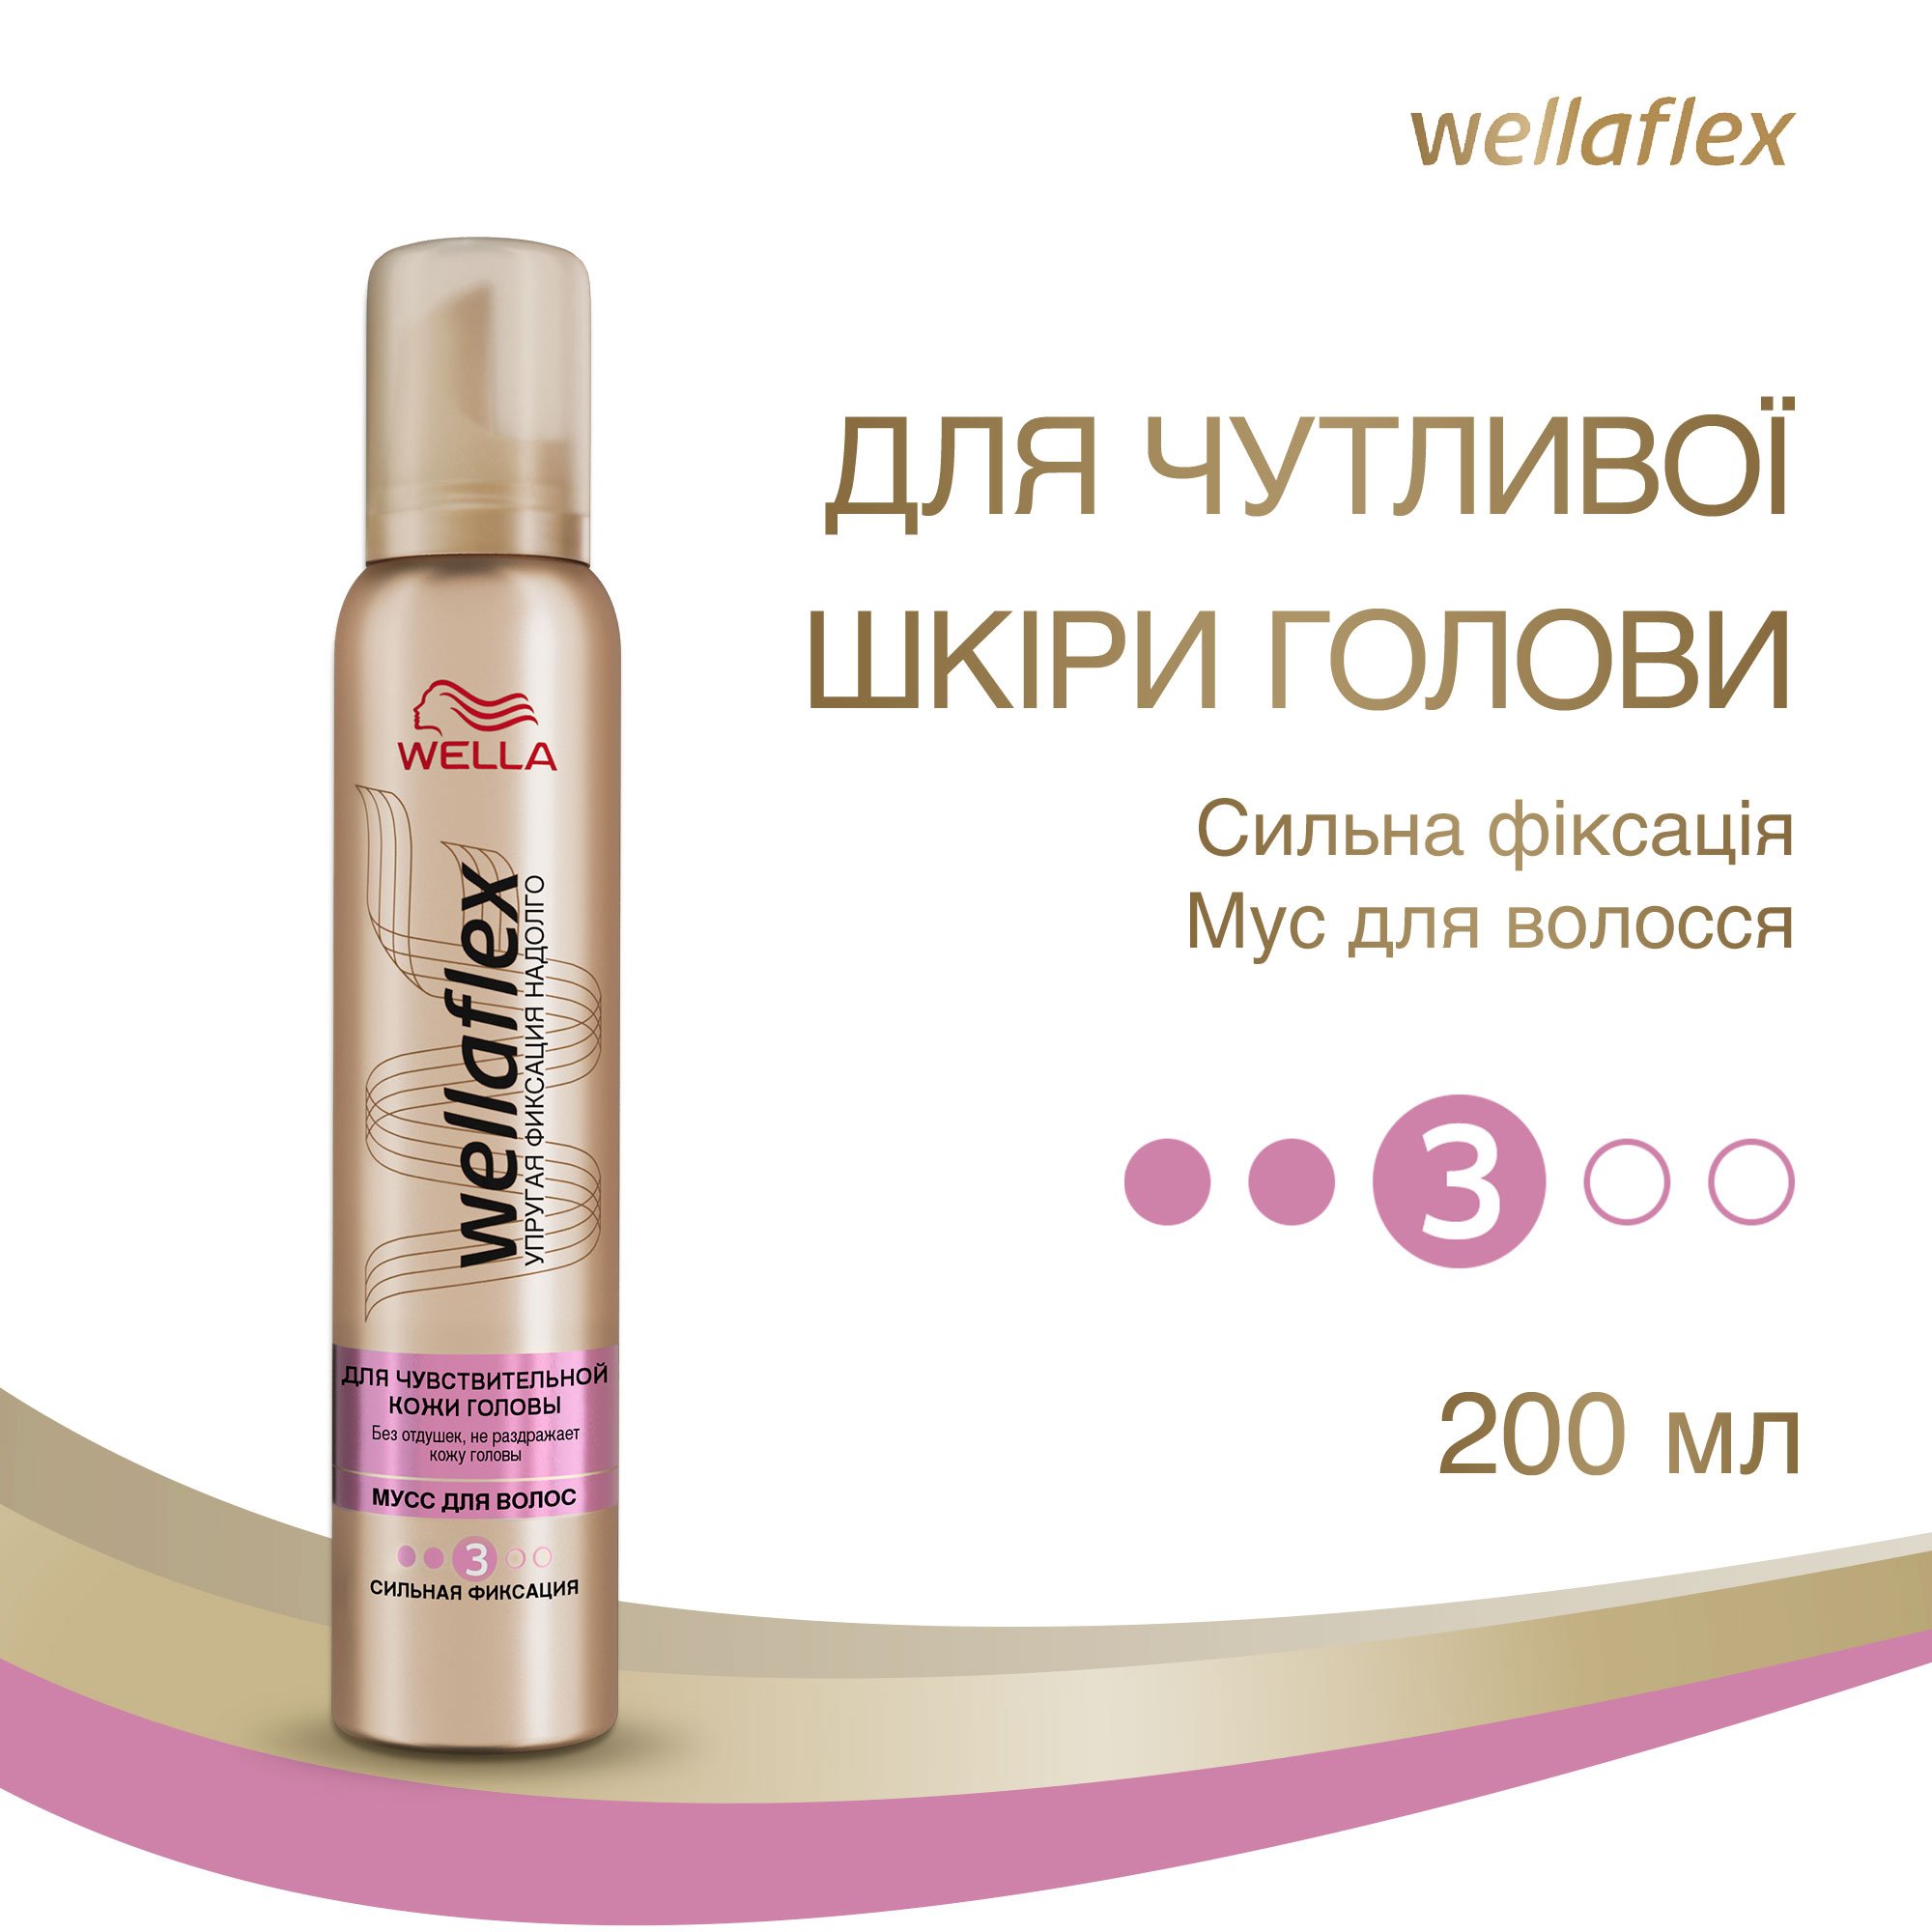 Мусс для волос Wellaflex для чувствительной кожи головы Сильной фиксации, 200 мл - фото 2